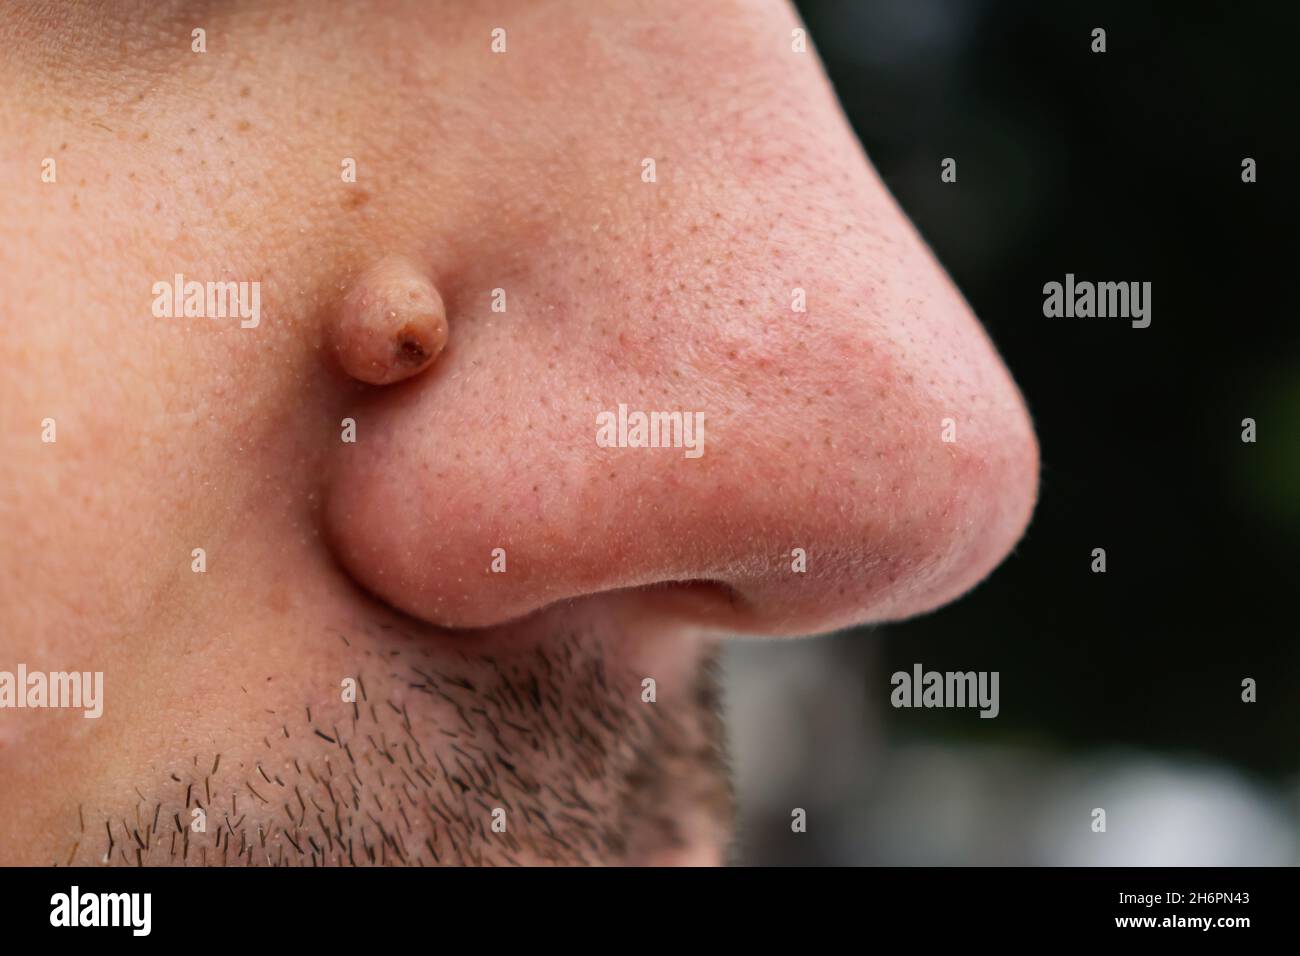 Néoplasme sur le visage près du nez d'une personne qui ressemble à une verrue ou à un papillome Banque D'Images